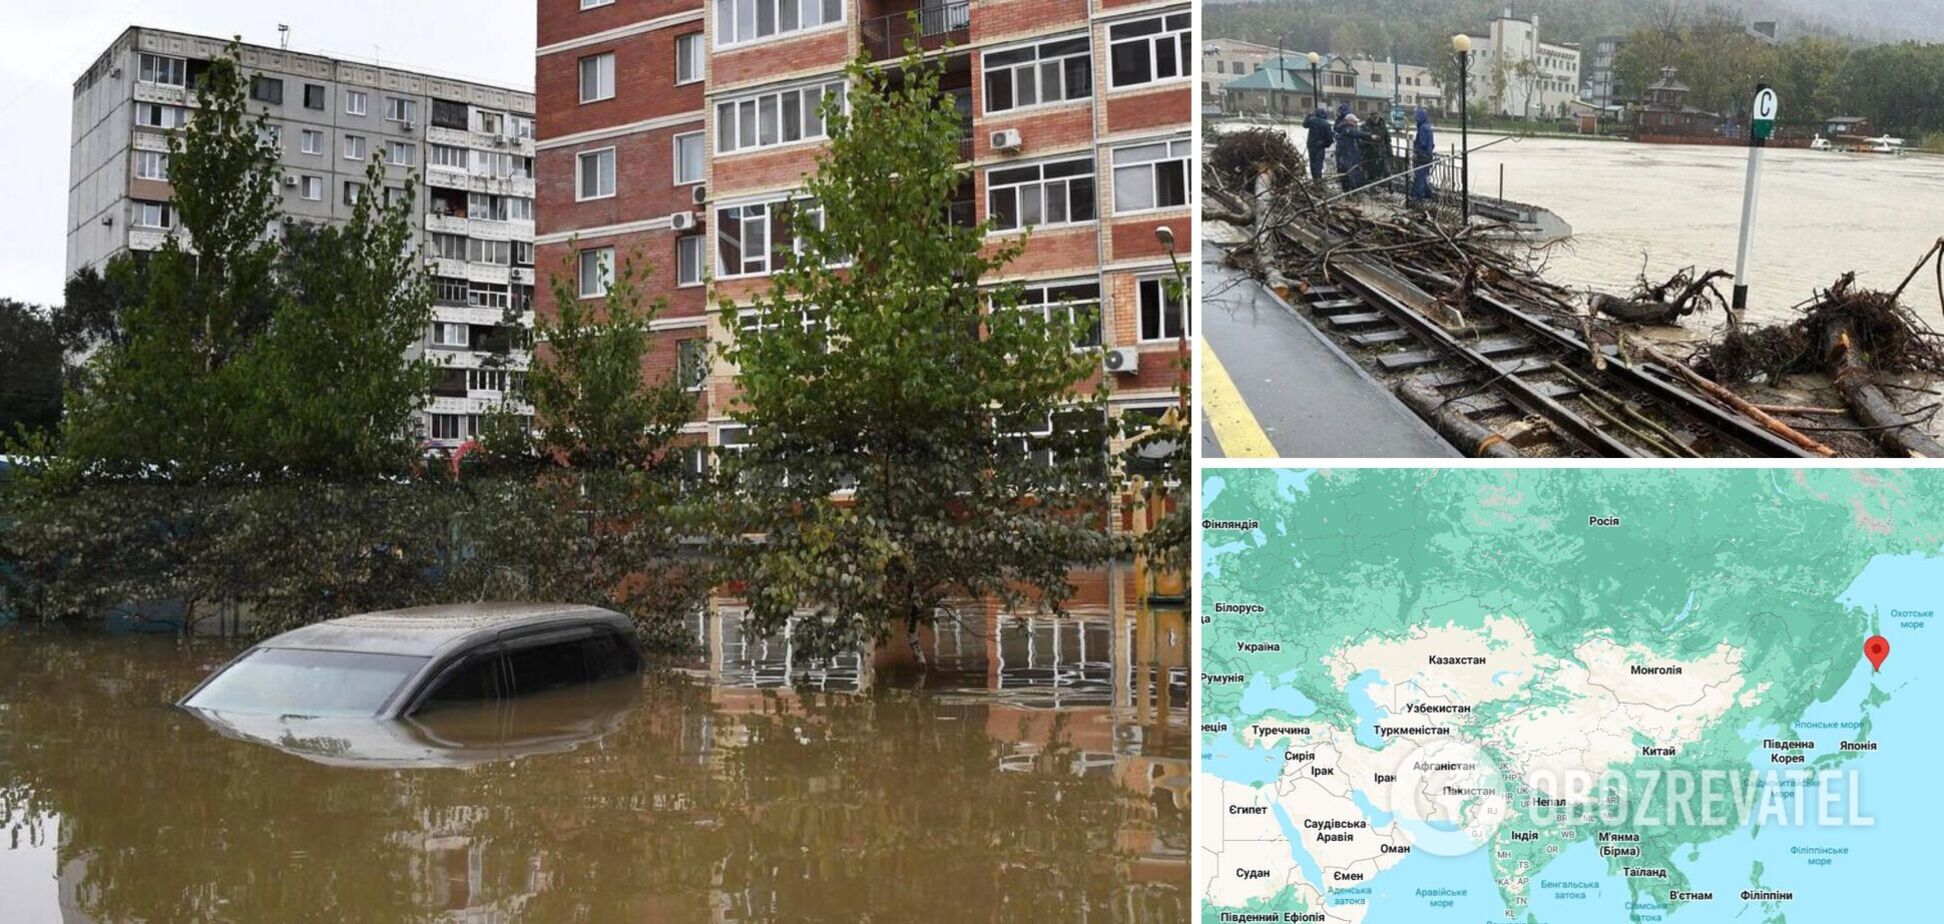 Улицы превратились в реки, тонут авто: российский Южно-Сахалинск затопило из-за мощного тайфуна. Фото и видео